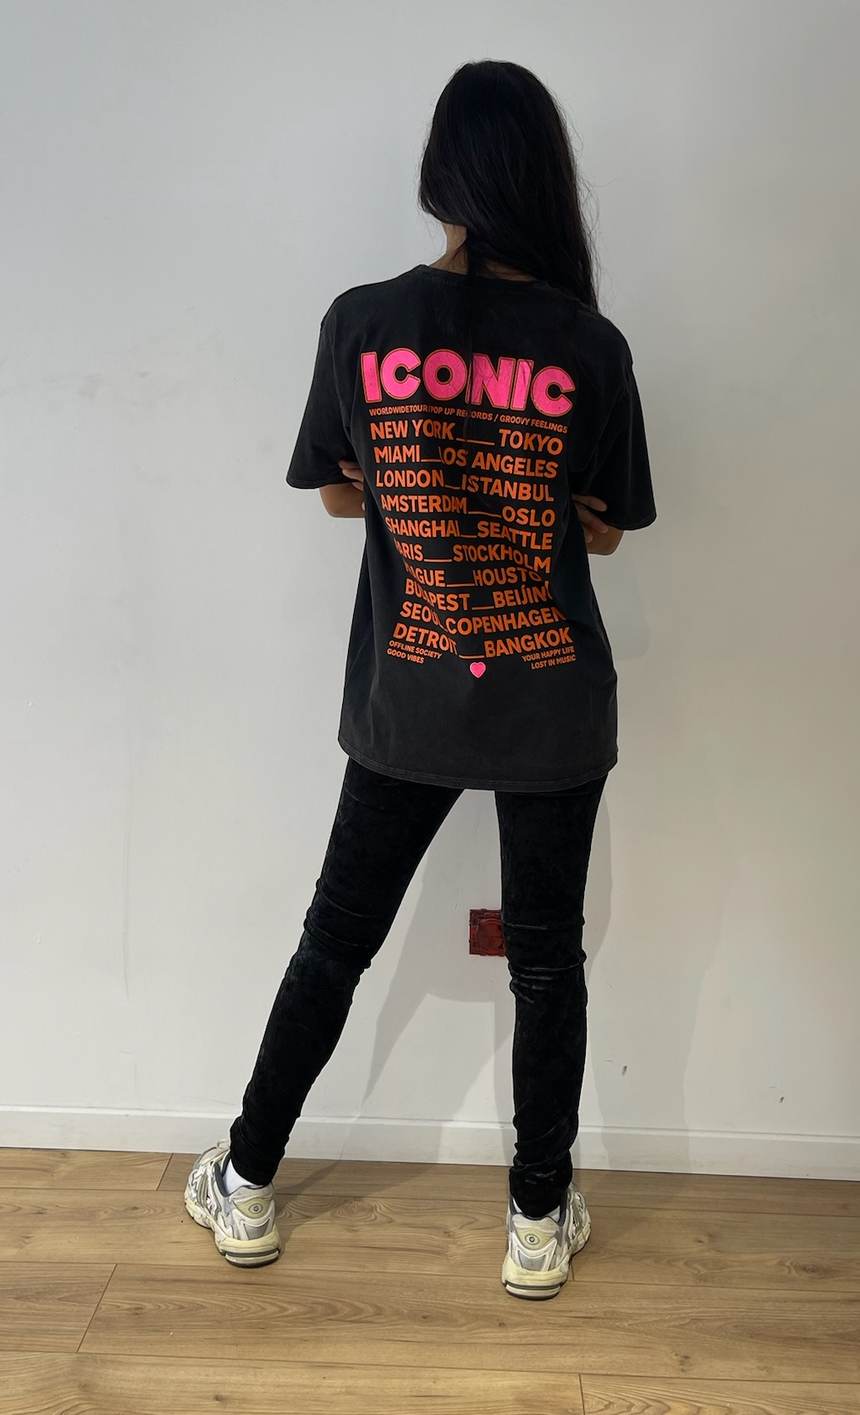 Vue arrière du t-shirt noir femme avec impression "ICONIC" et noms de villes